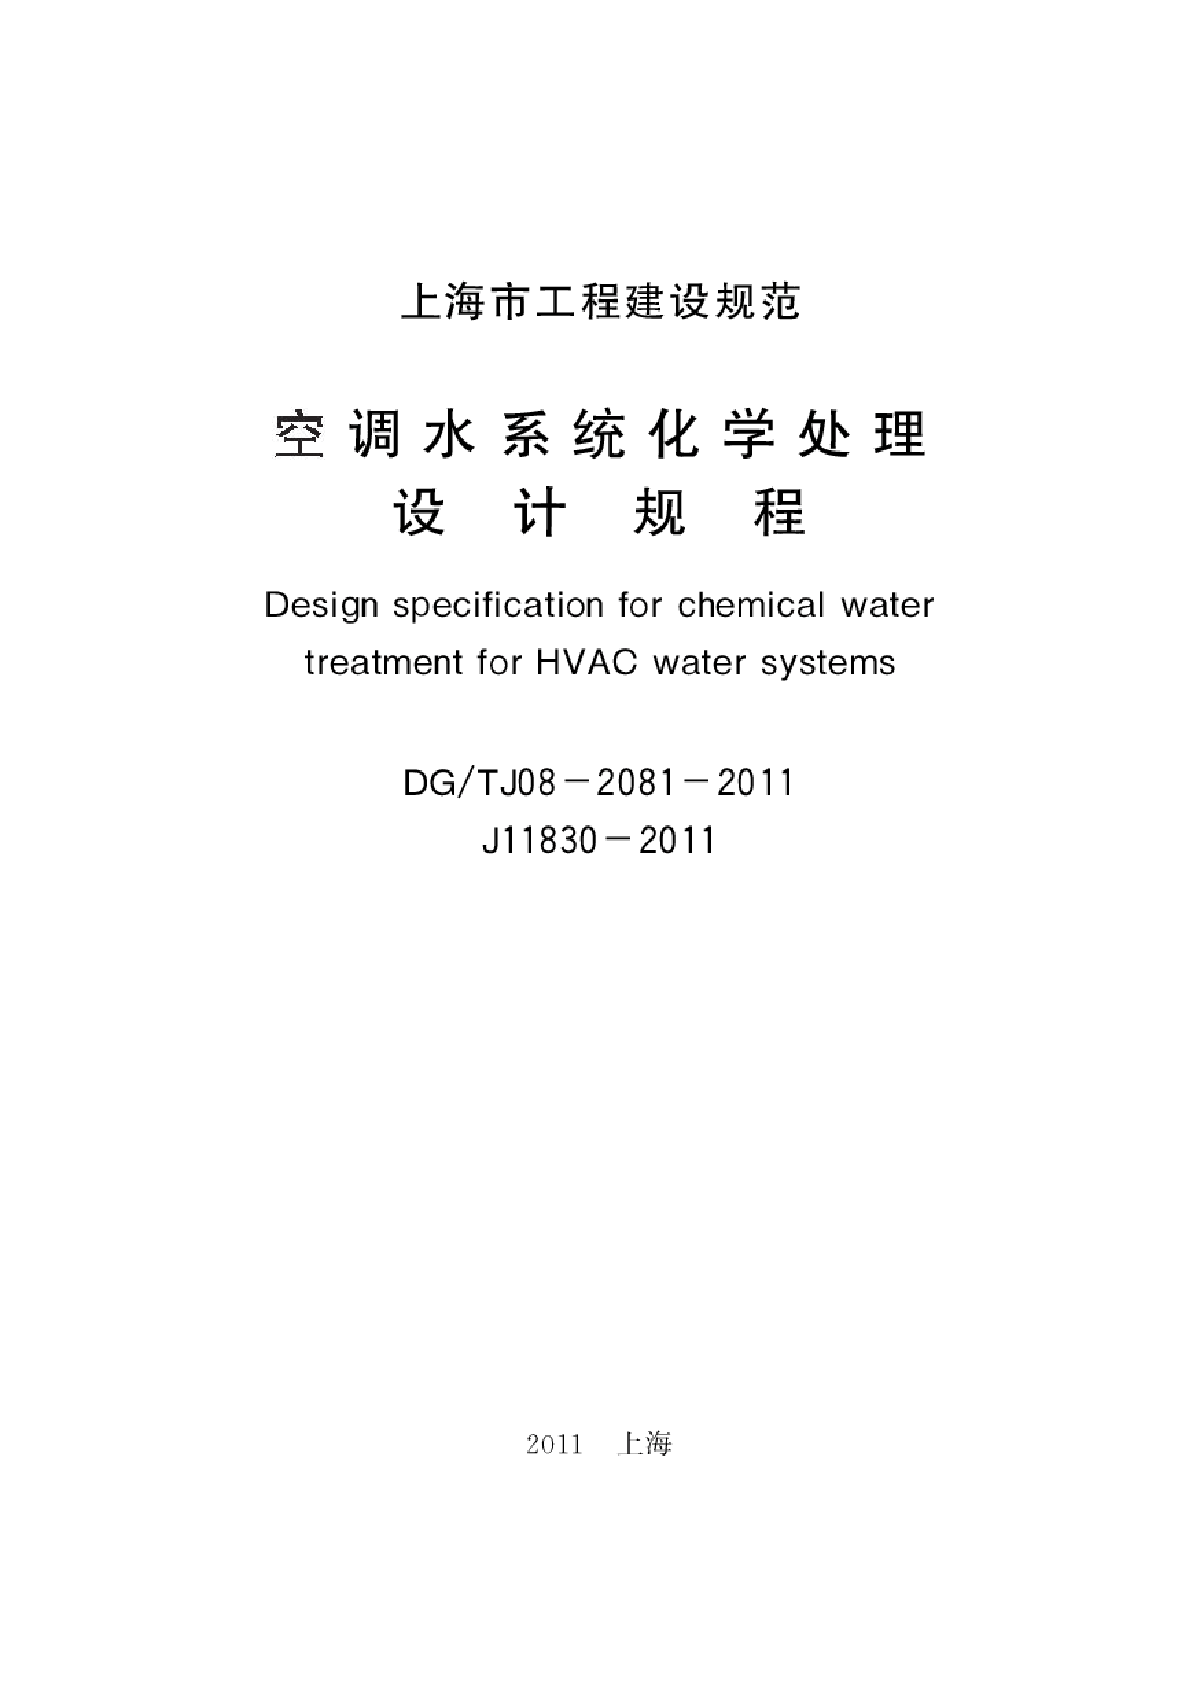 上海市 空调水系统化学处理设计规程DGTJ08-2081-2011.pdf-图一